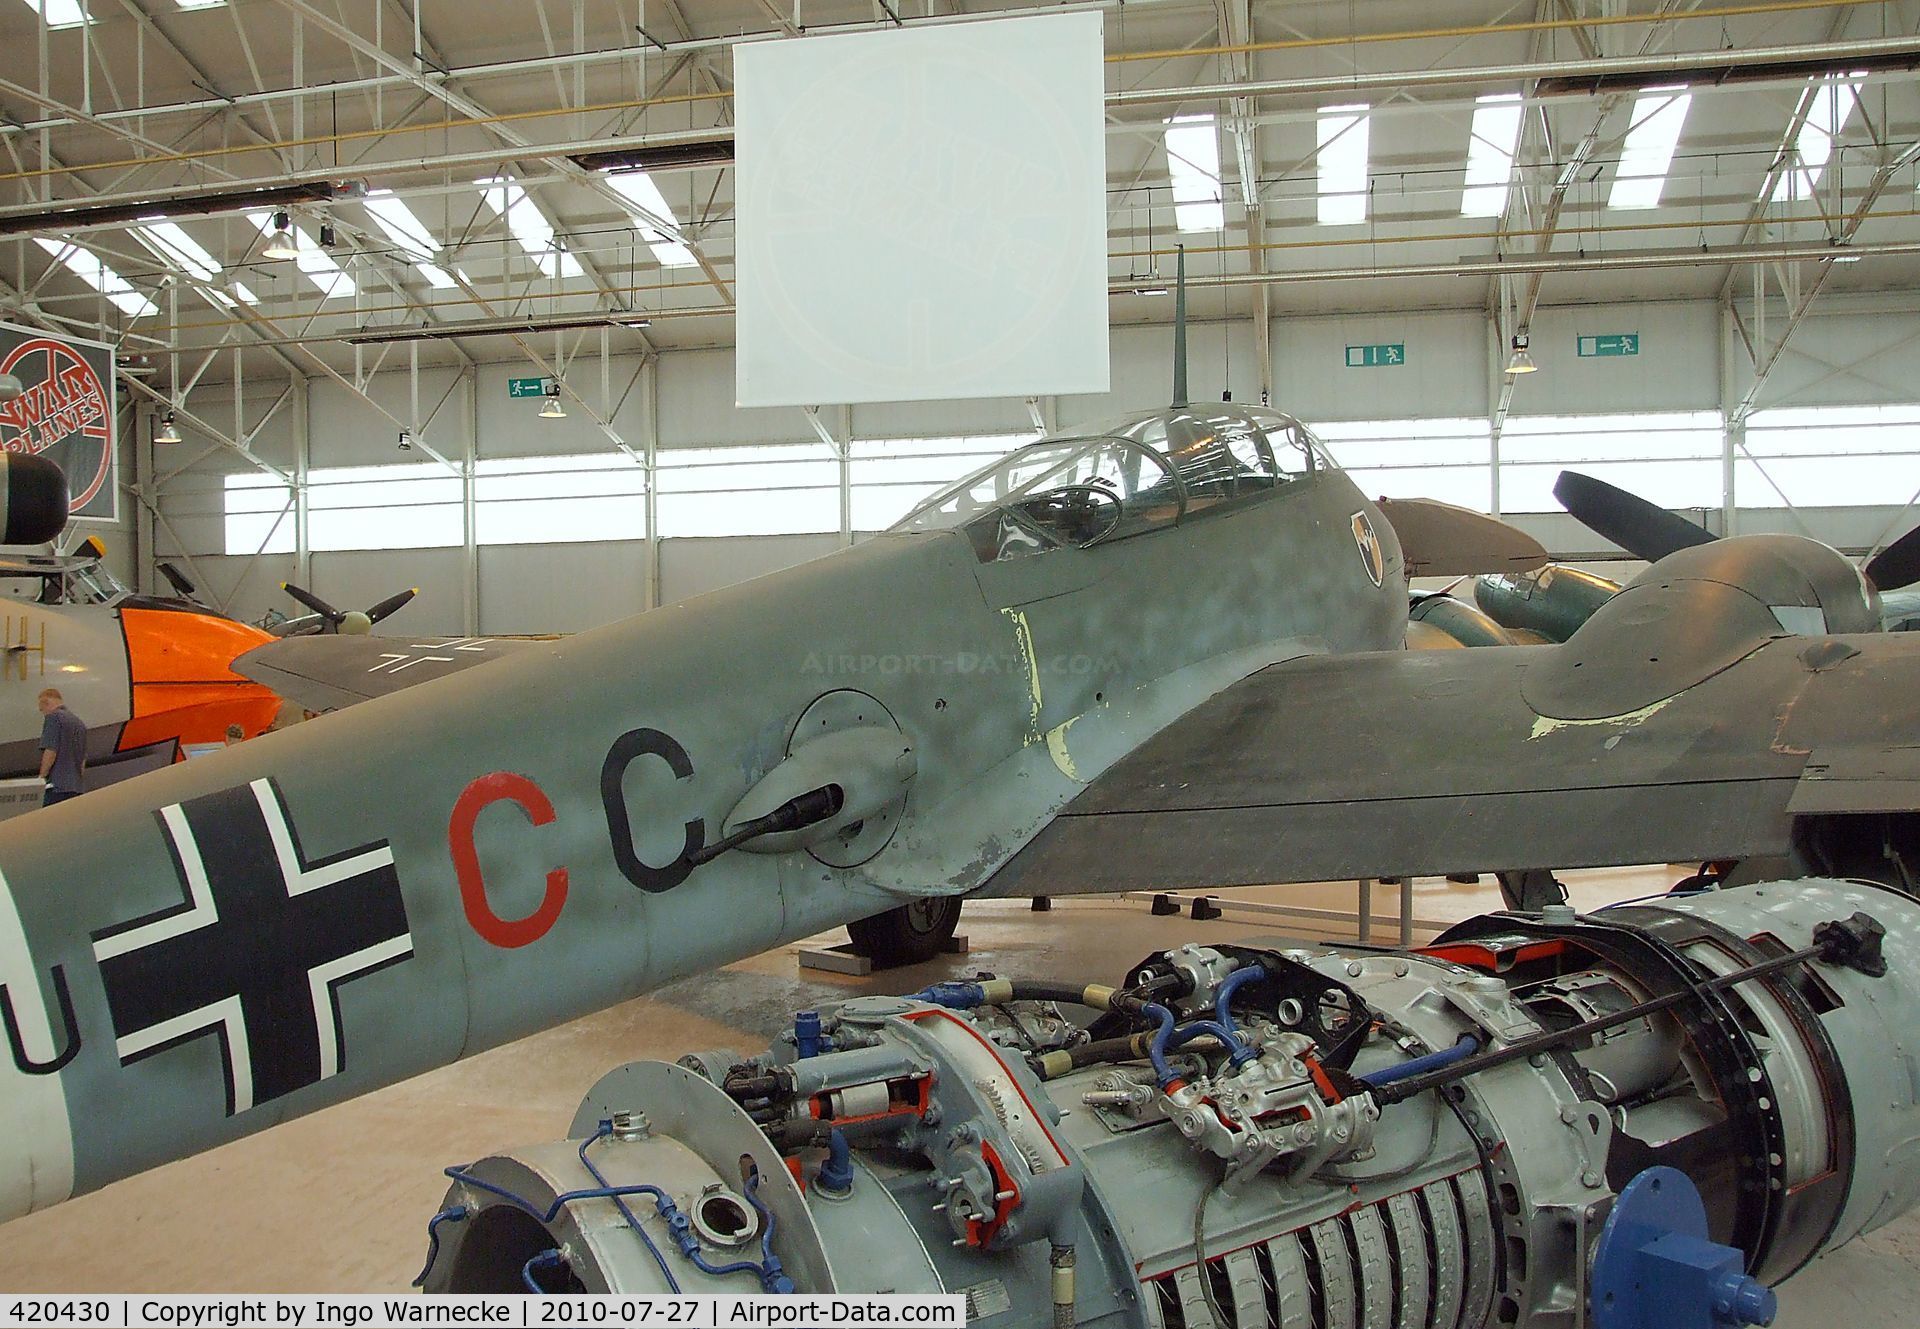 420430, Messerschmitt Me-410A C/N 420430, Messerschmitt Me 410A at the RAF Museum, Cosford